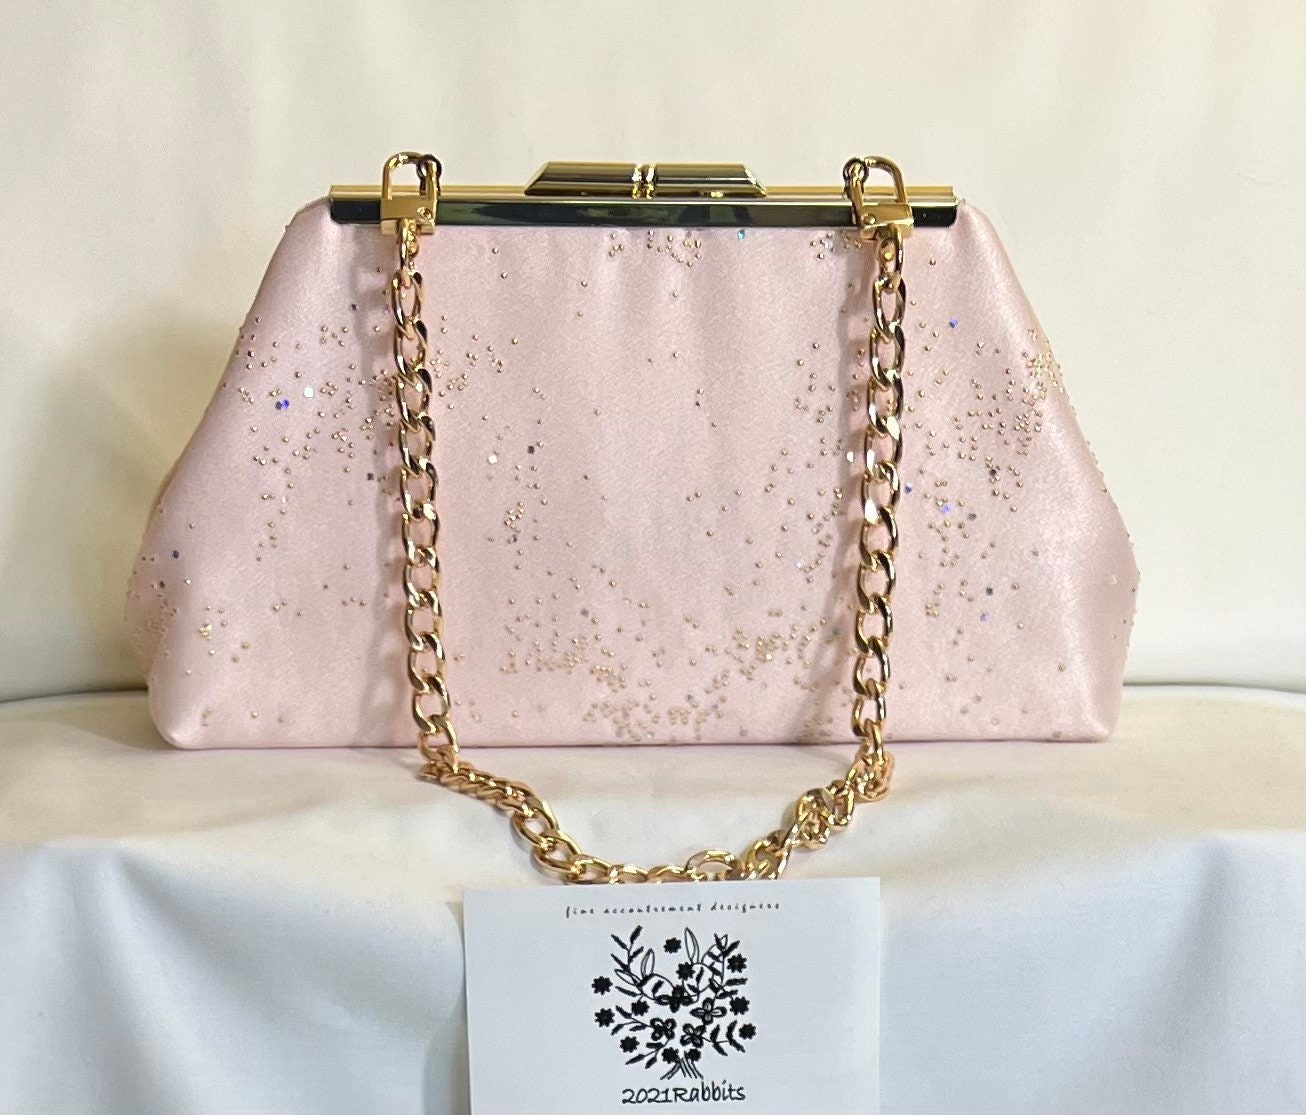 MaoXinTek Women Clutch Bag Elegant Sequins Evening Chain Shoulder Envelope Purse Sparkly Pink Bridal Prom Handbag for Party Wedding Vocation Pink 